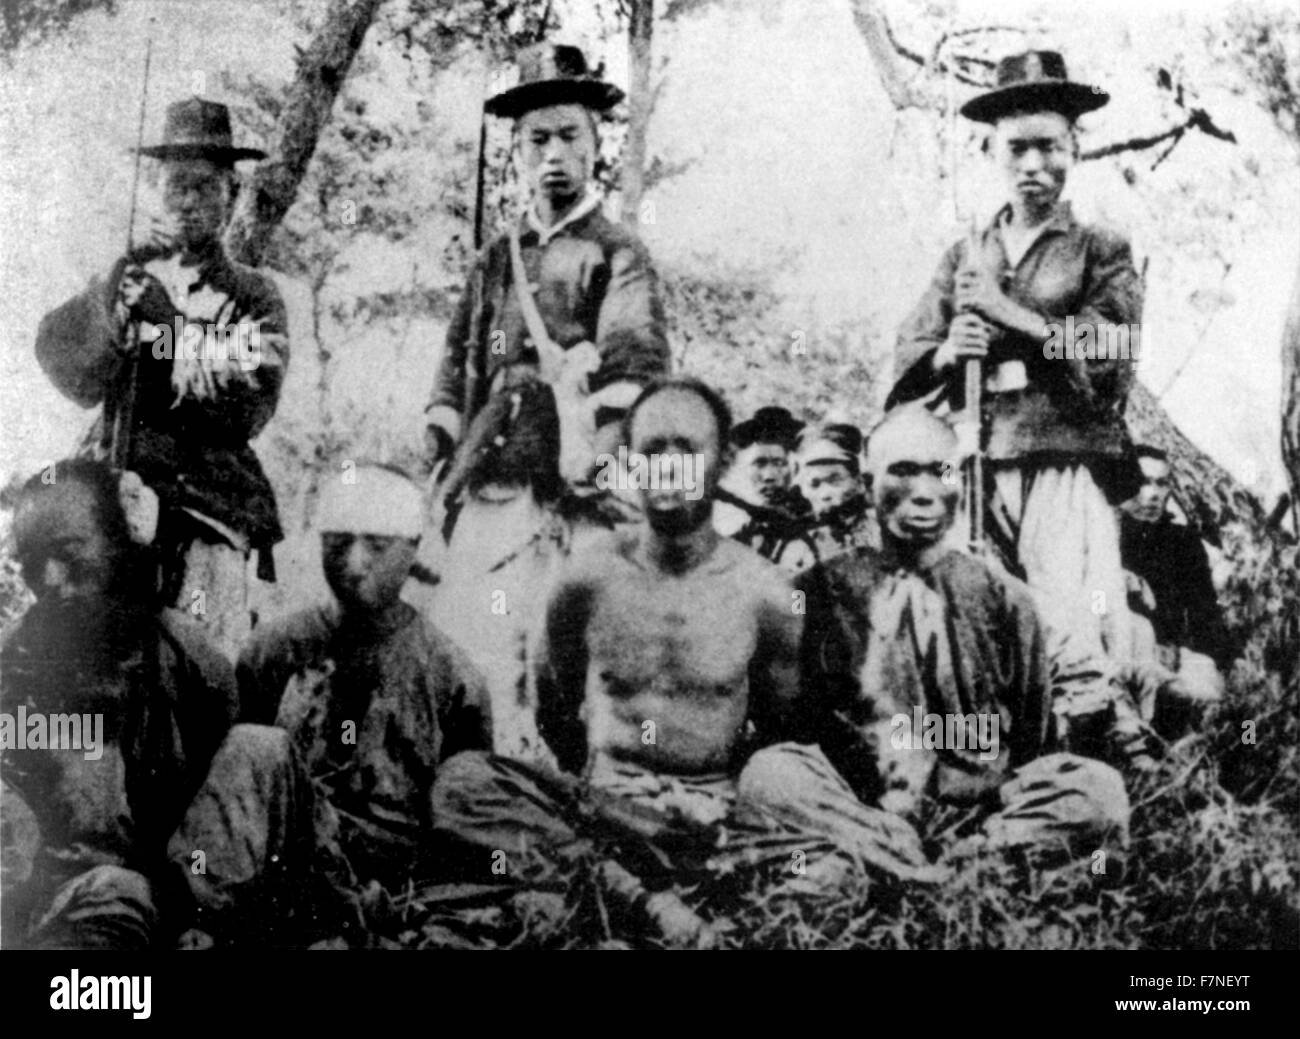 Photographie de soldats chinois coréen avec captifs pendant la première guerre sino-japonaise. Datée 1894 Banque D'Images